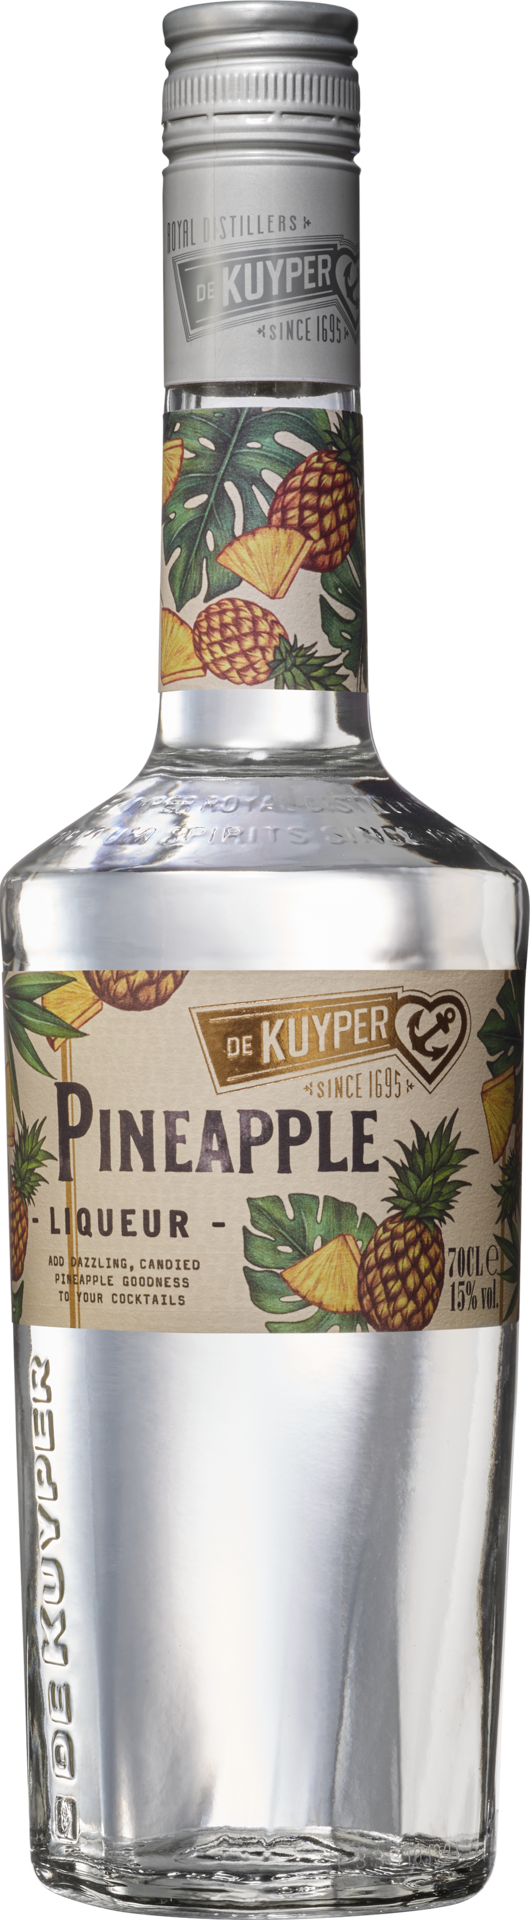 Pineapple Liqueur